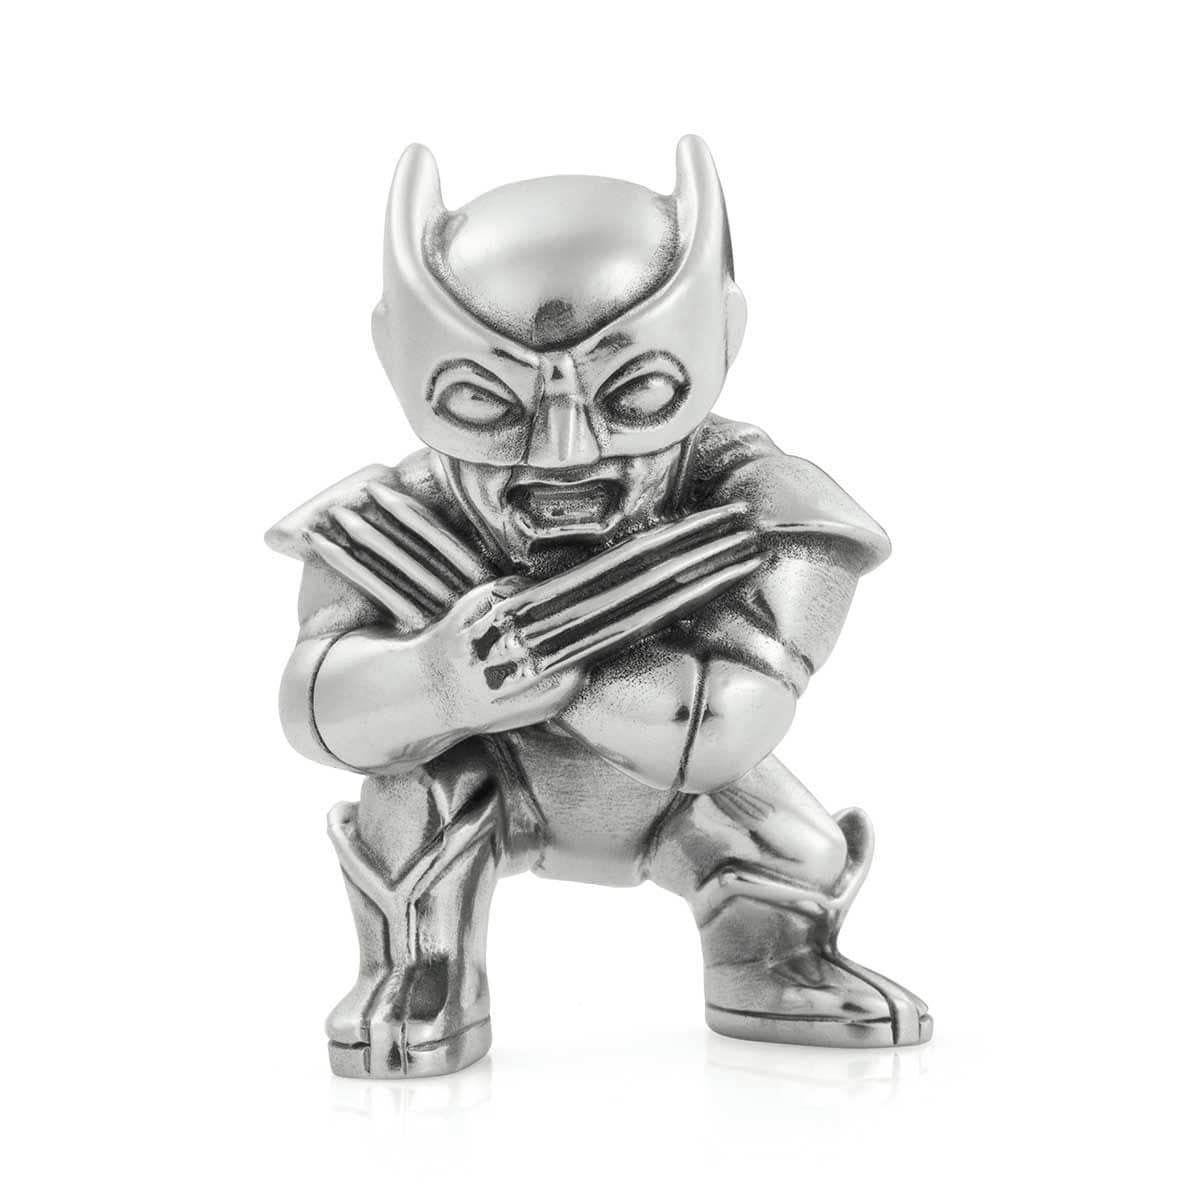 ROYAL SELANGOR -MARVEL Wolverine Mini Figurine